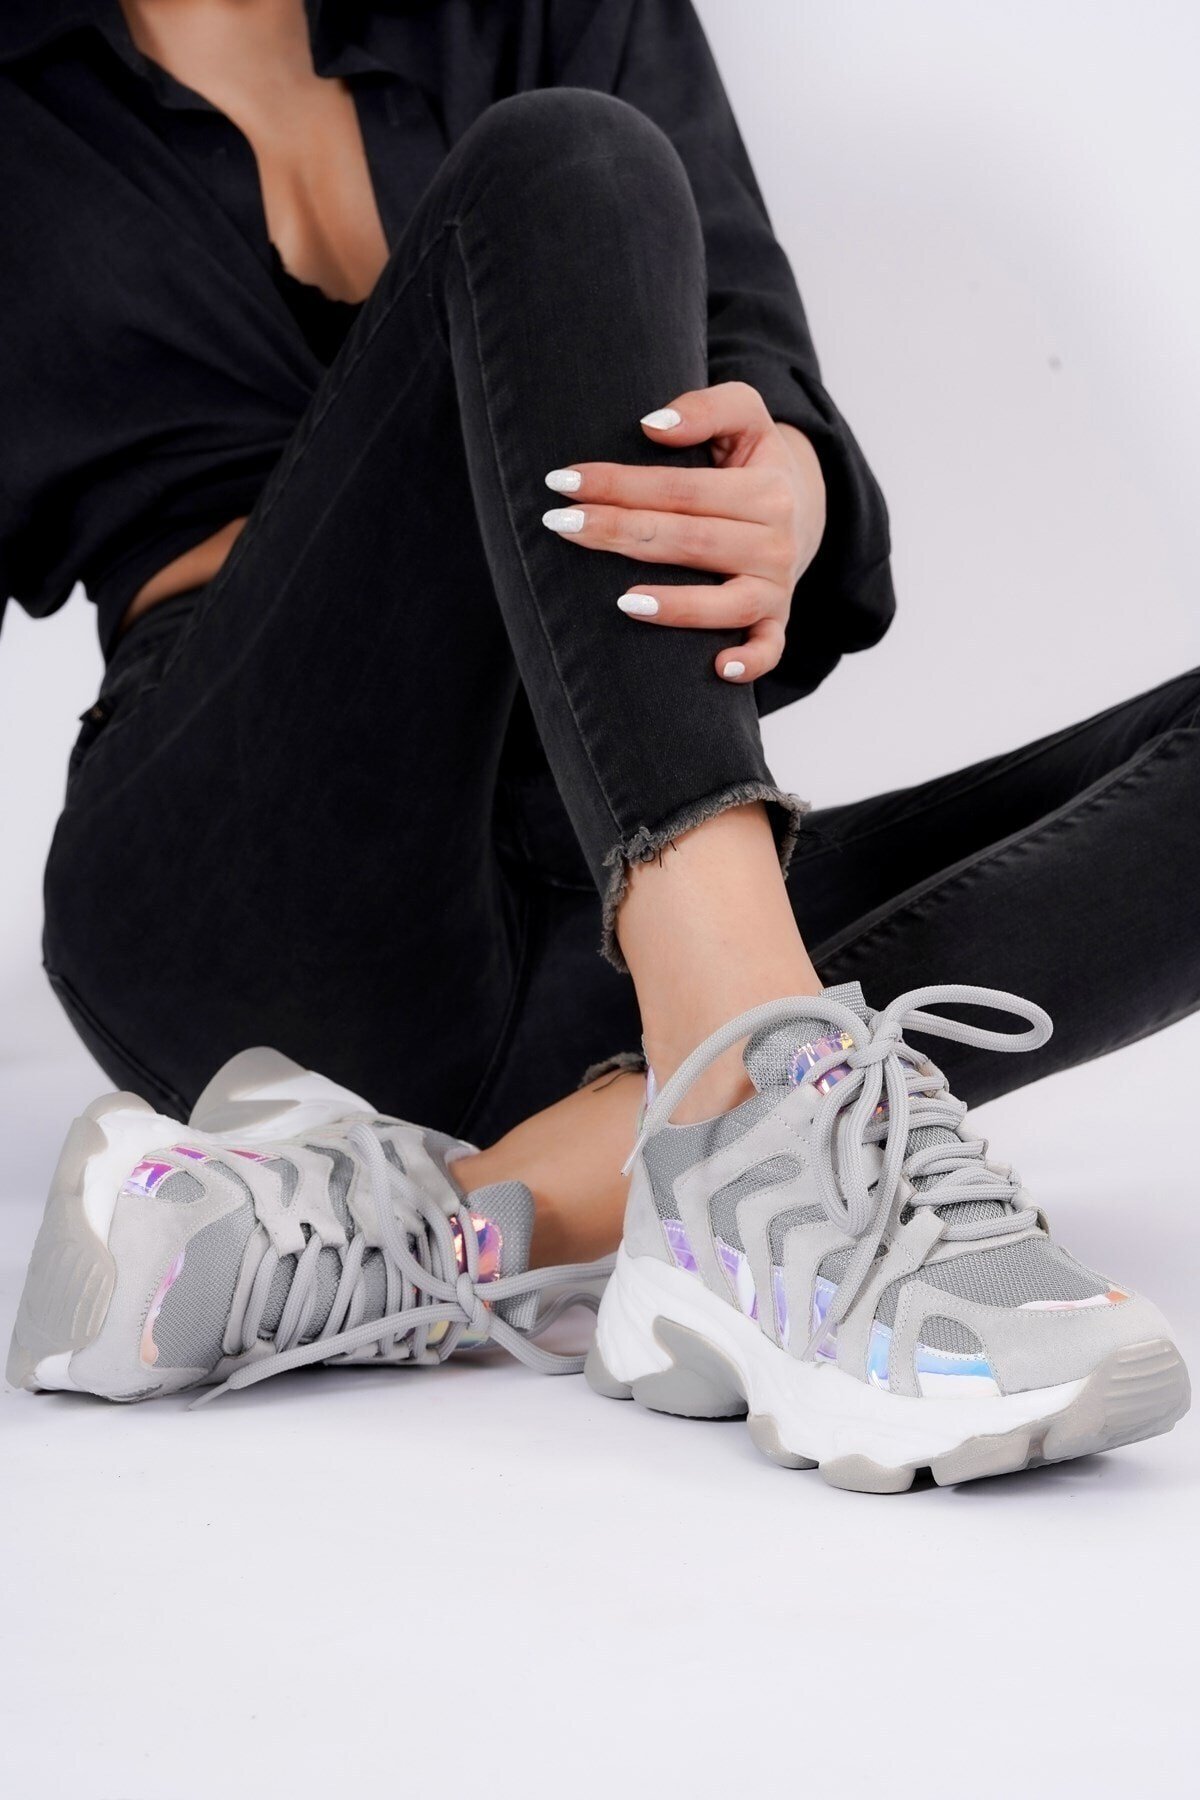 Kadın Toreks Gri Hologramlı Kalın Taban Bağcıklı Spor Ayakkabı149,90 TL